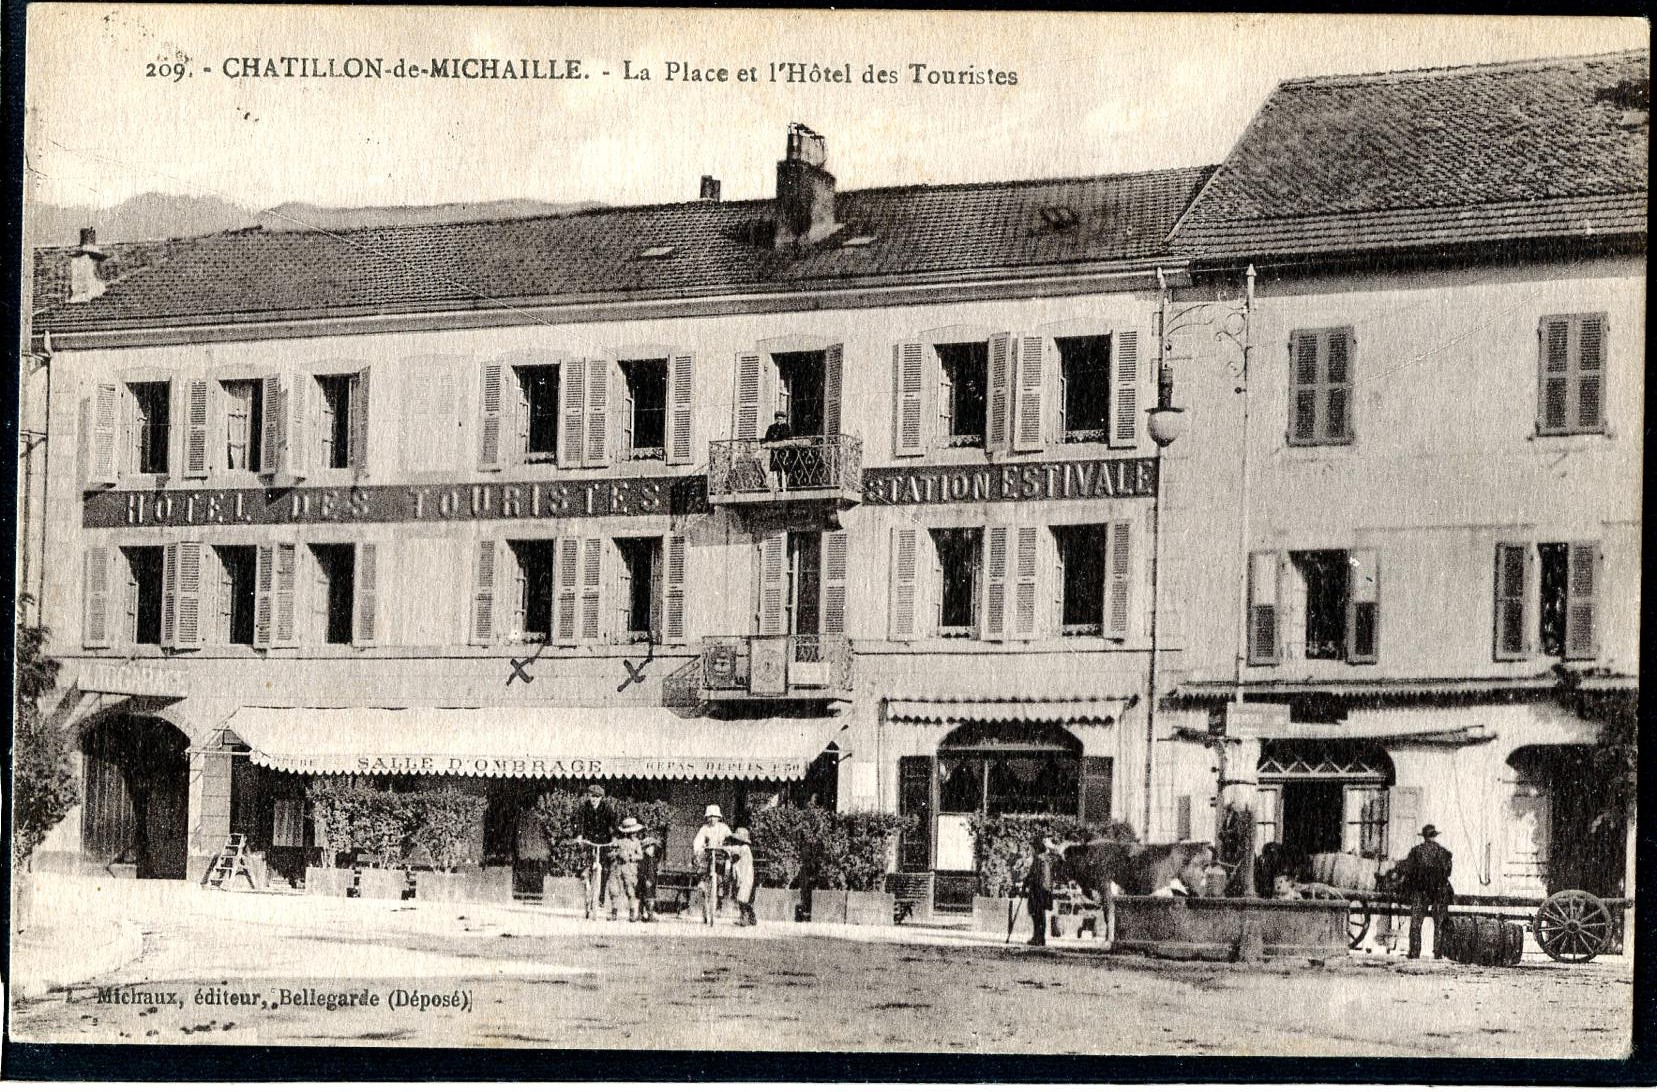 CHATILLON DE MICHAILLE HOTEL DES TOURISTES